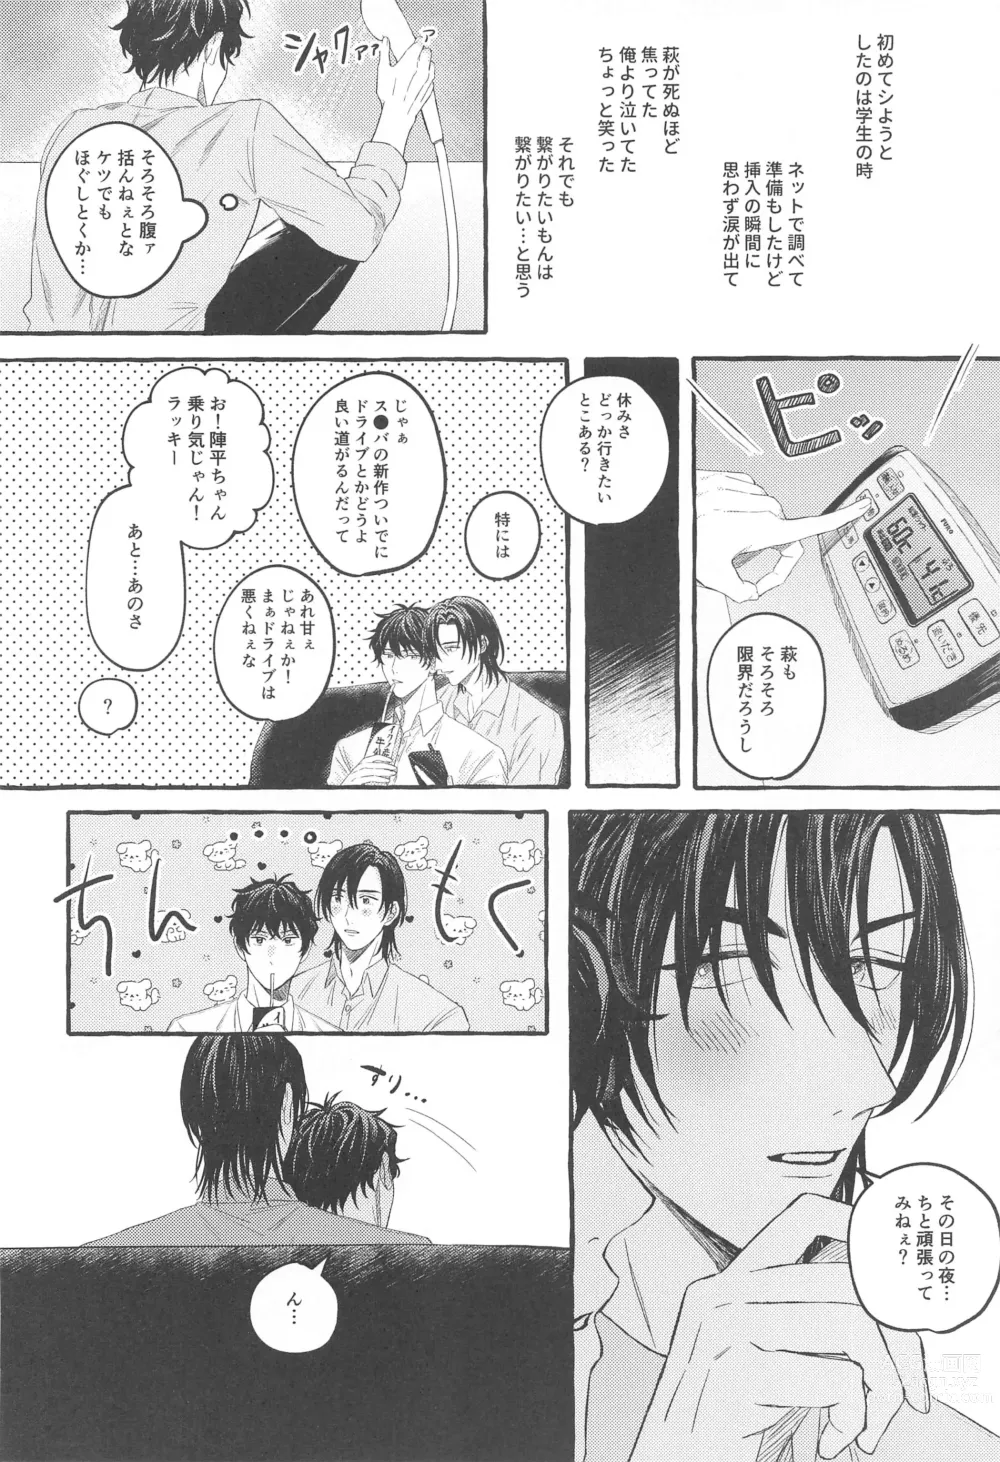 Page 5 of doujinshi Ore wa Koitsu ni Yowai